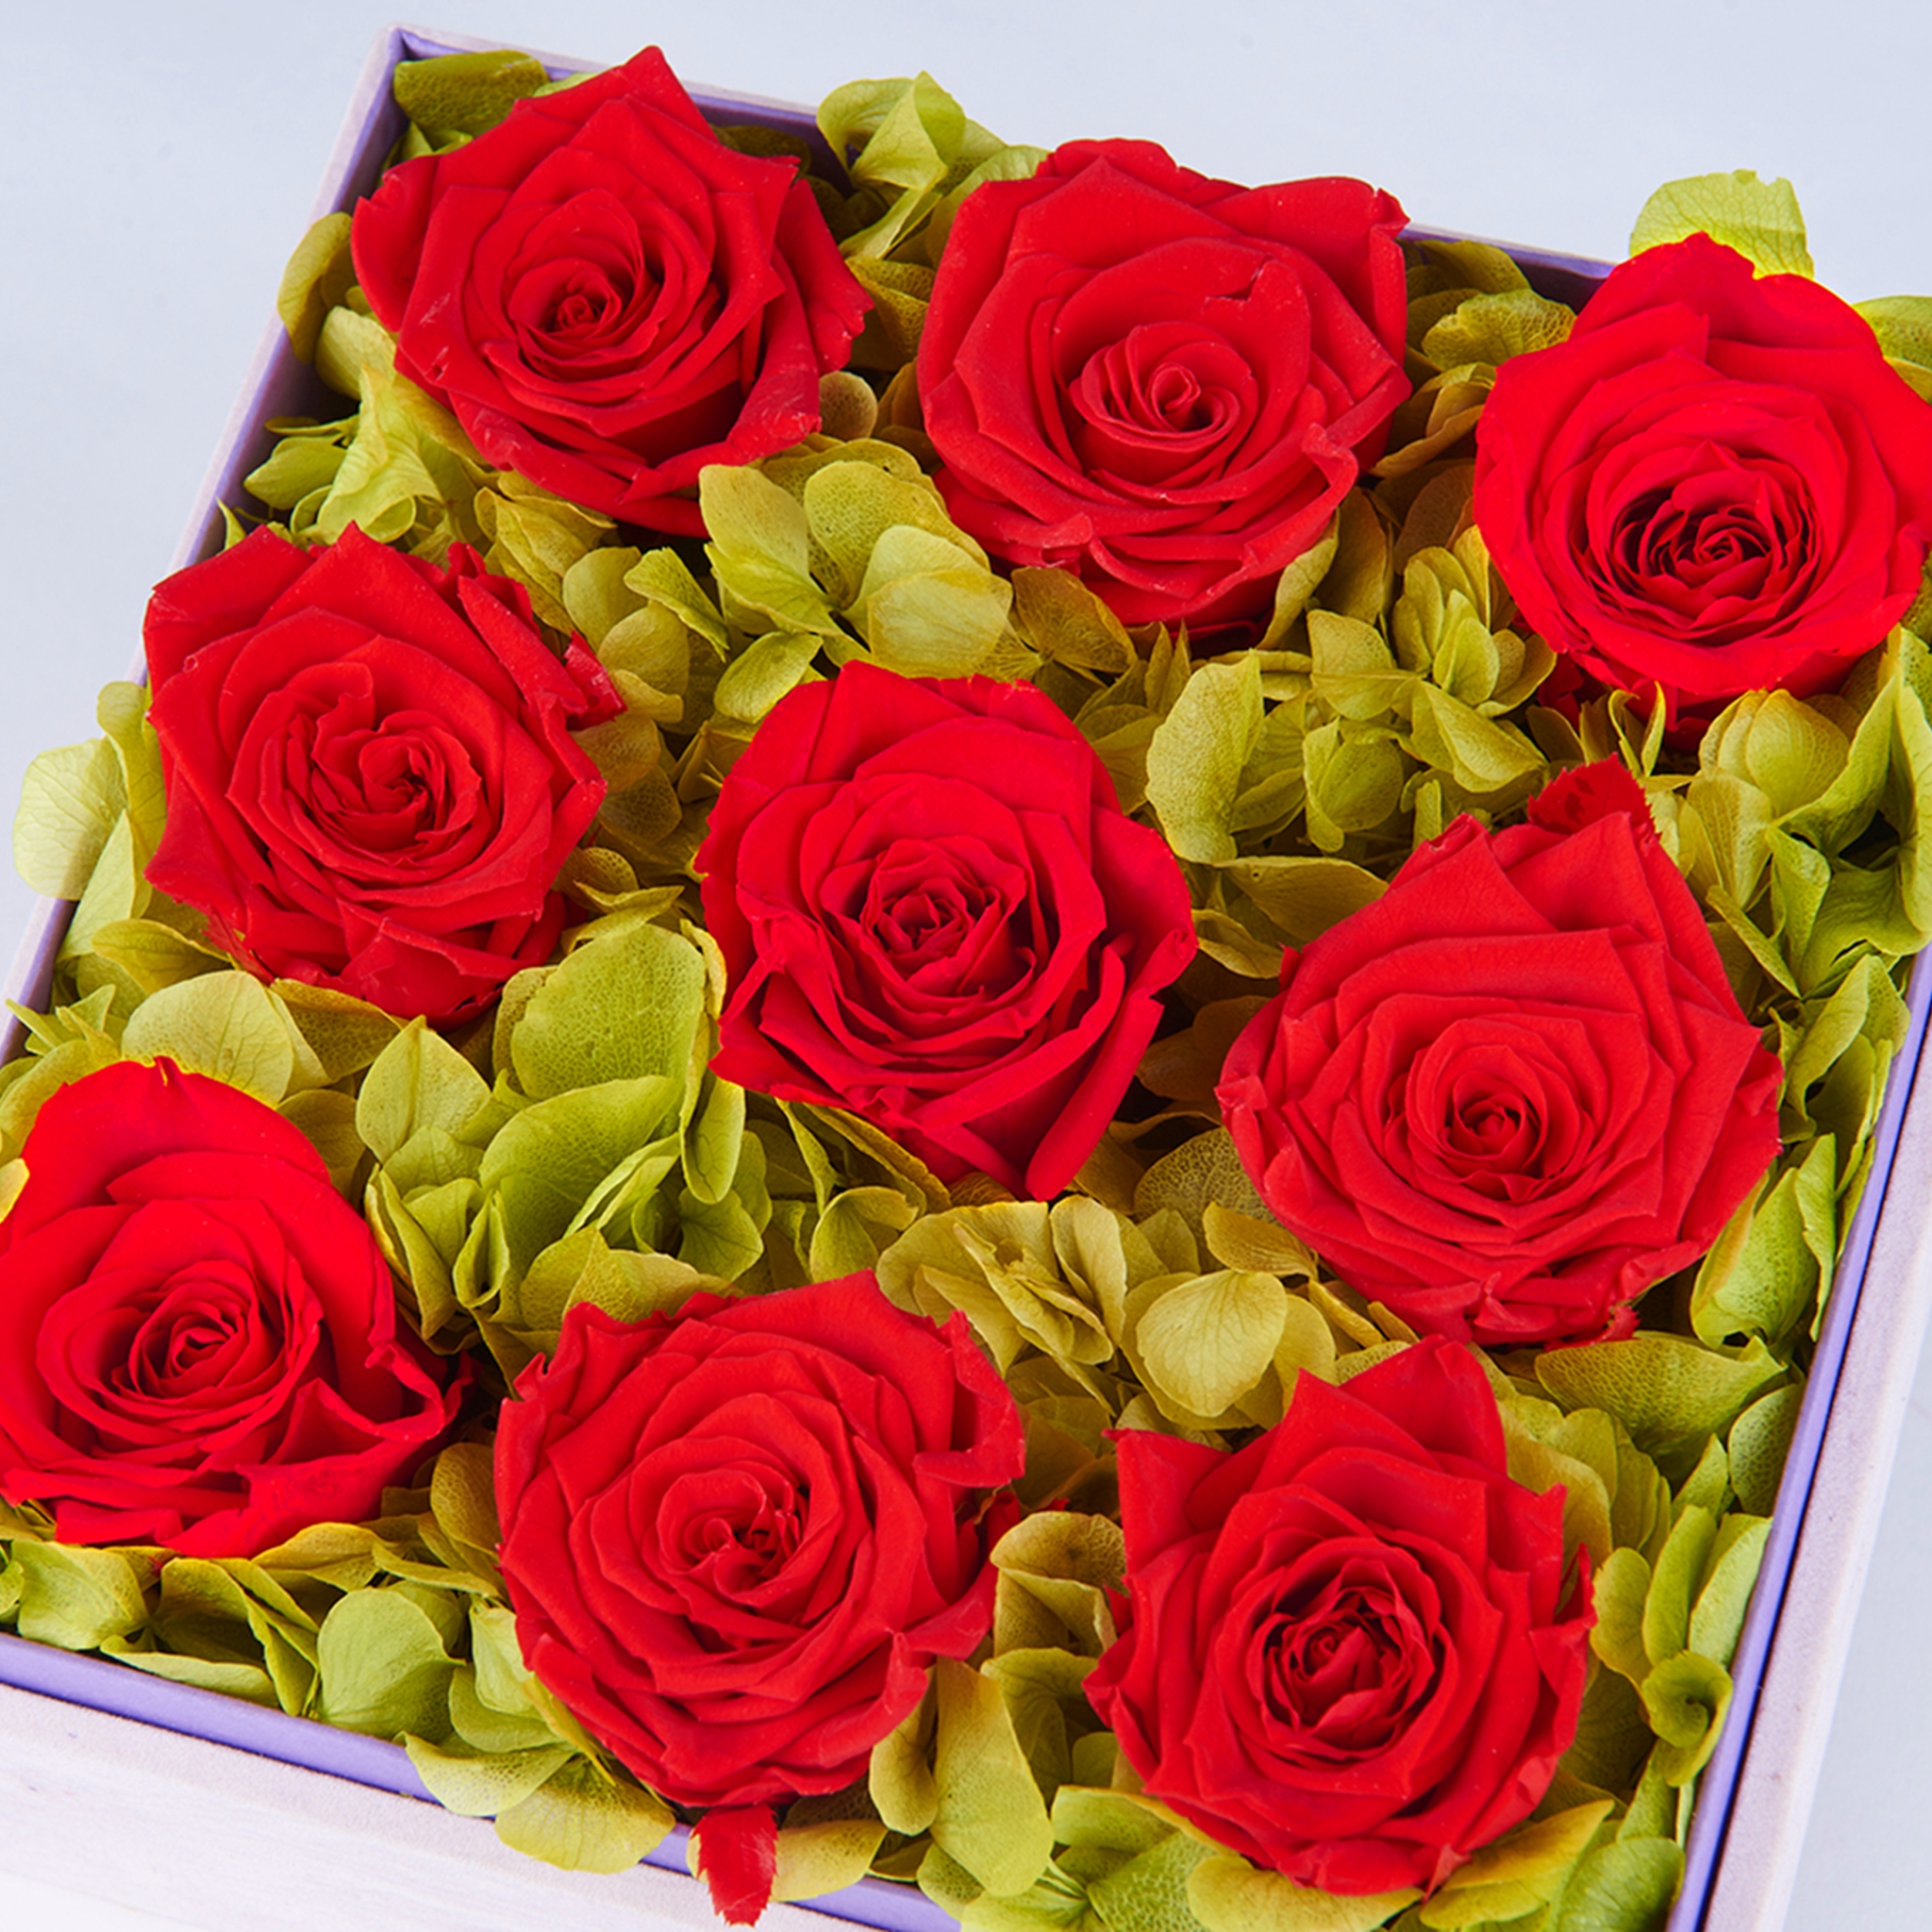 玫瑰花礼盒图片大全 鲜花礼盒图片造型(5)